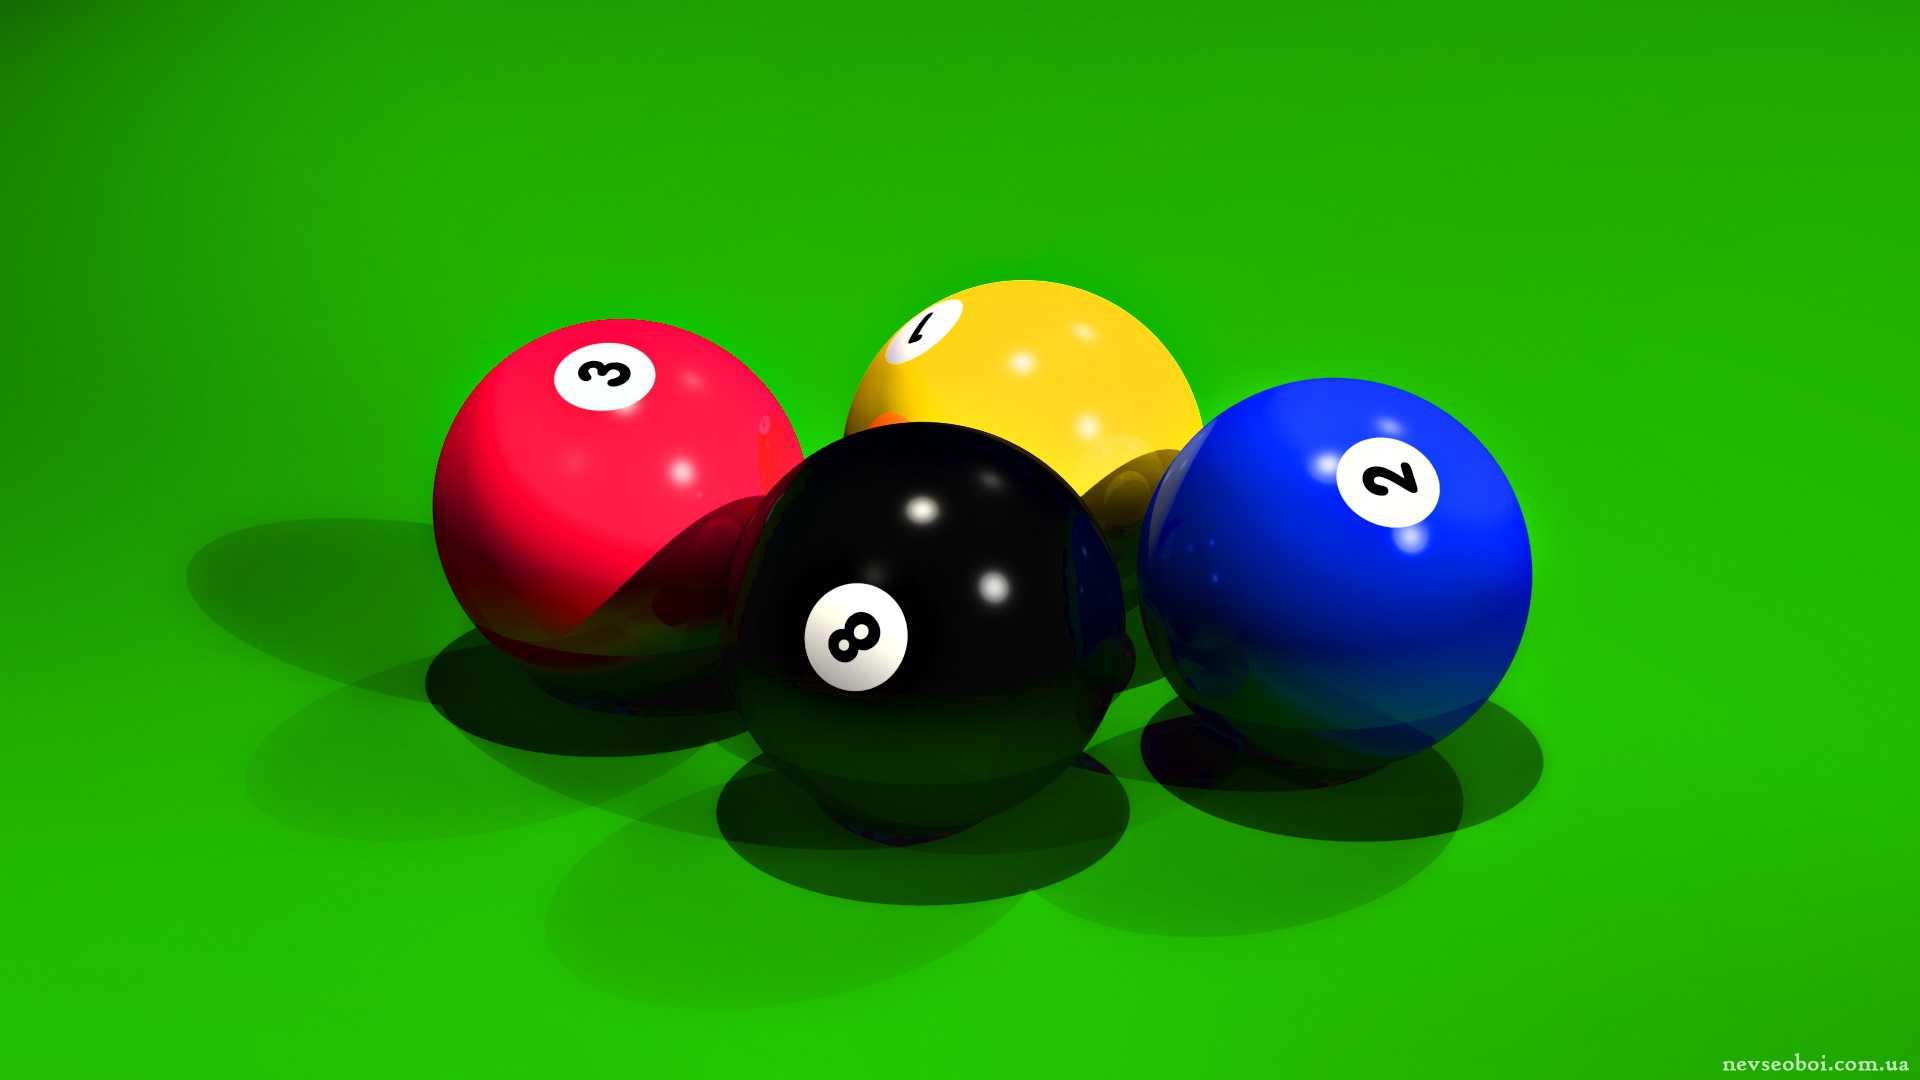 Бильярдный шар 4. Бильярдные шары. Шары для бильярда. Шар восьмерка бильярд. Разноцветные шары для бильярда.